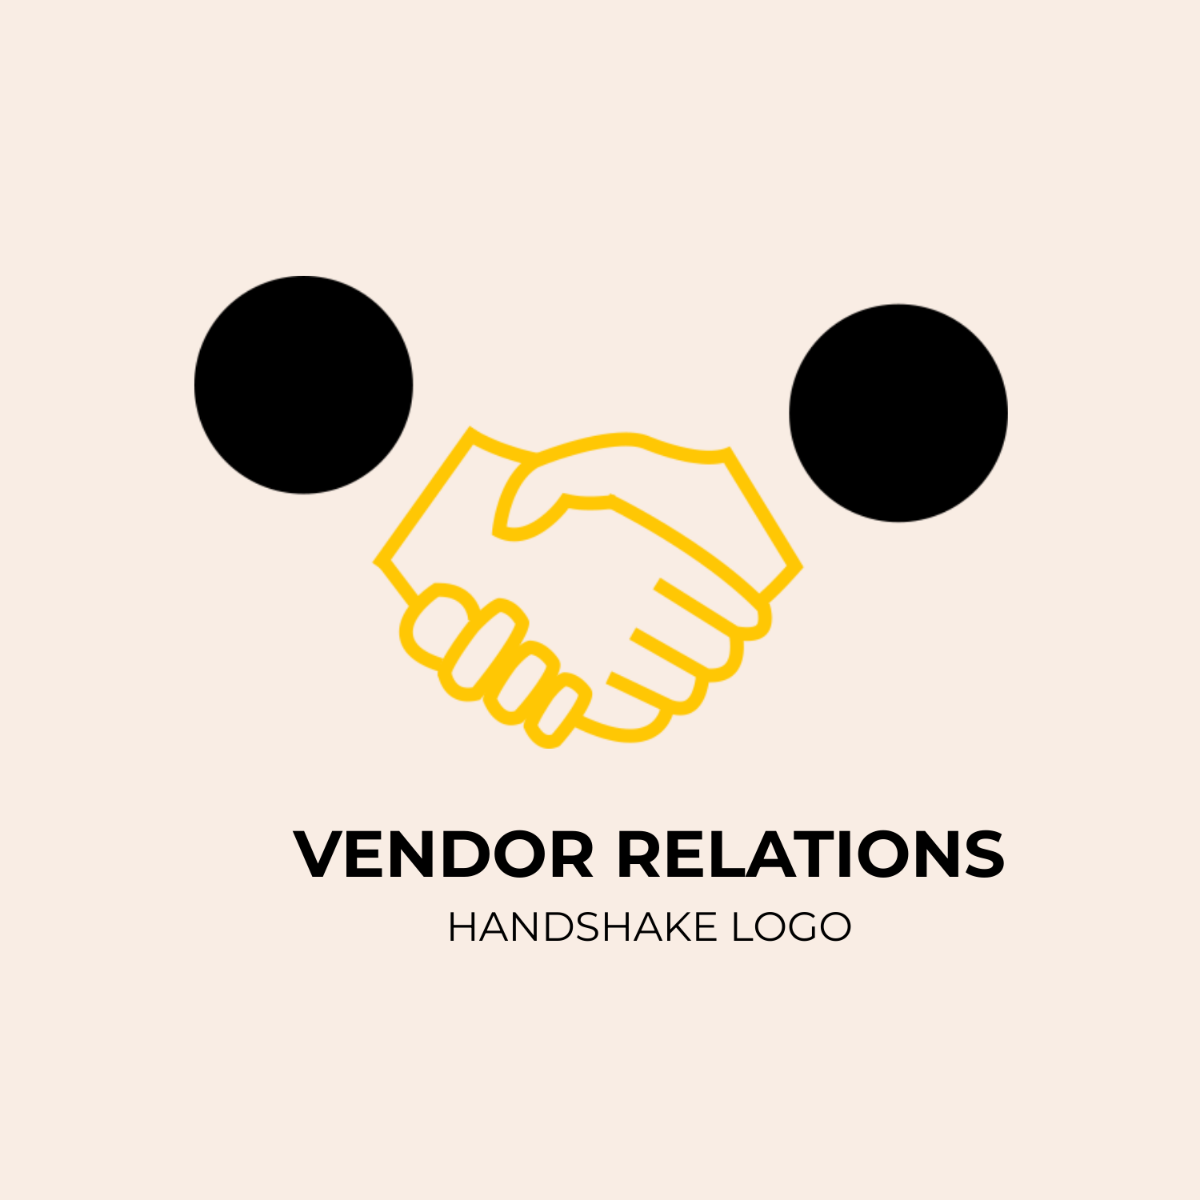 Vendor Relations Handshake Logo Template